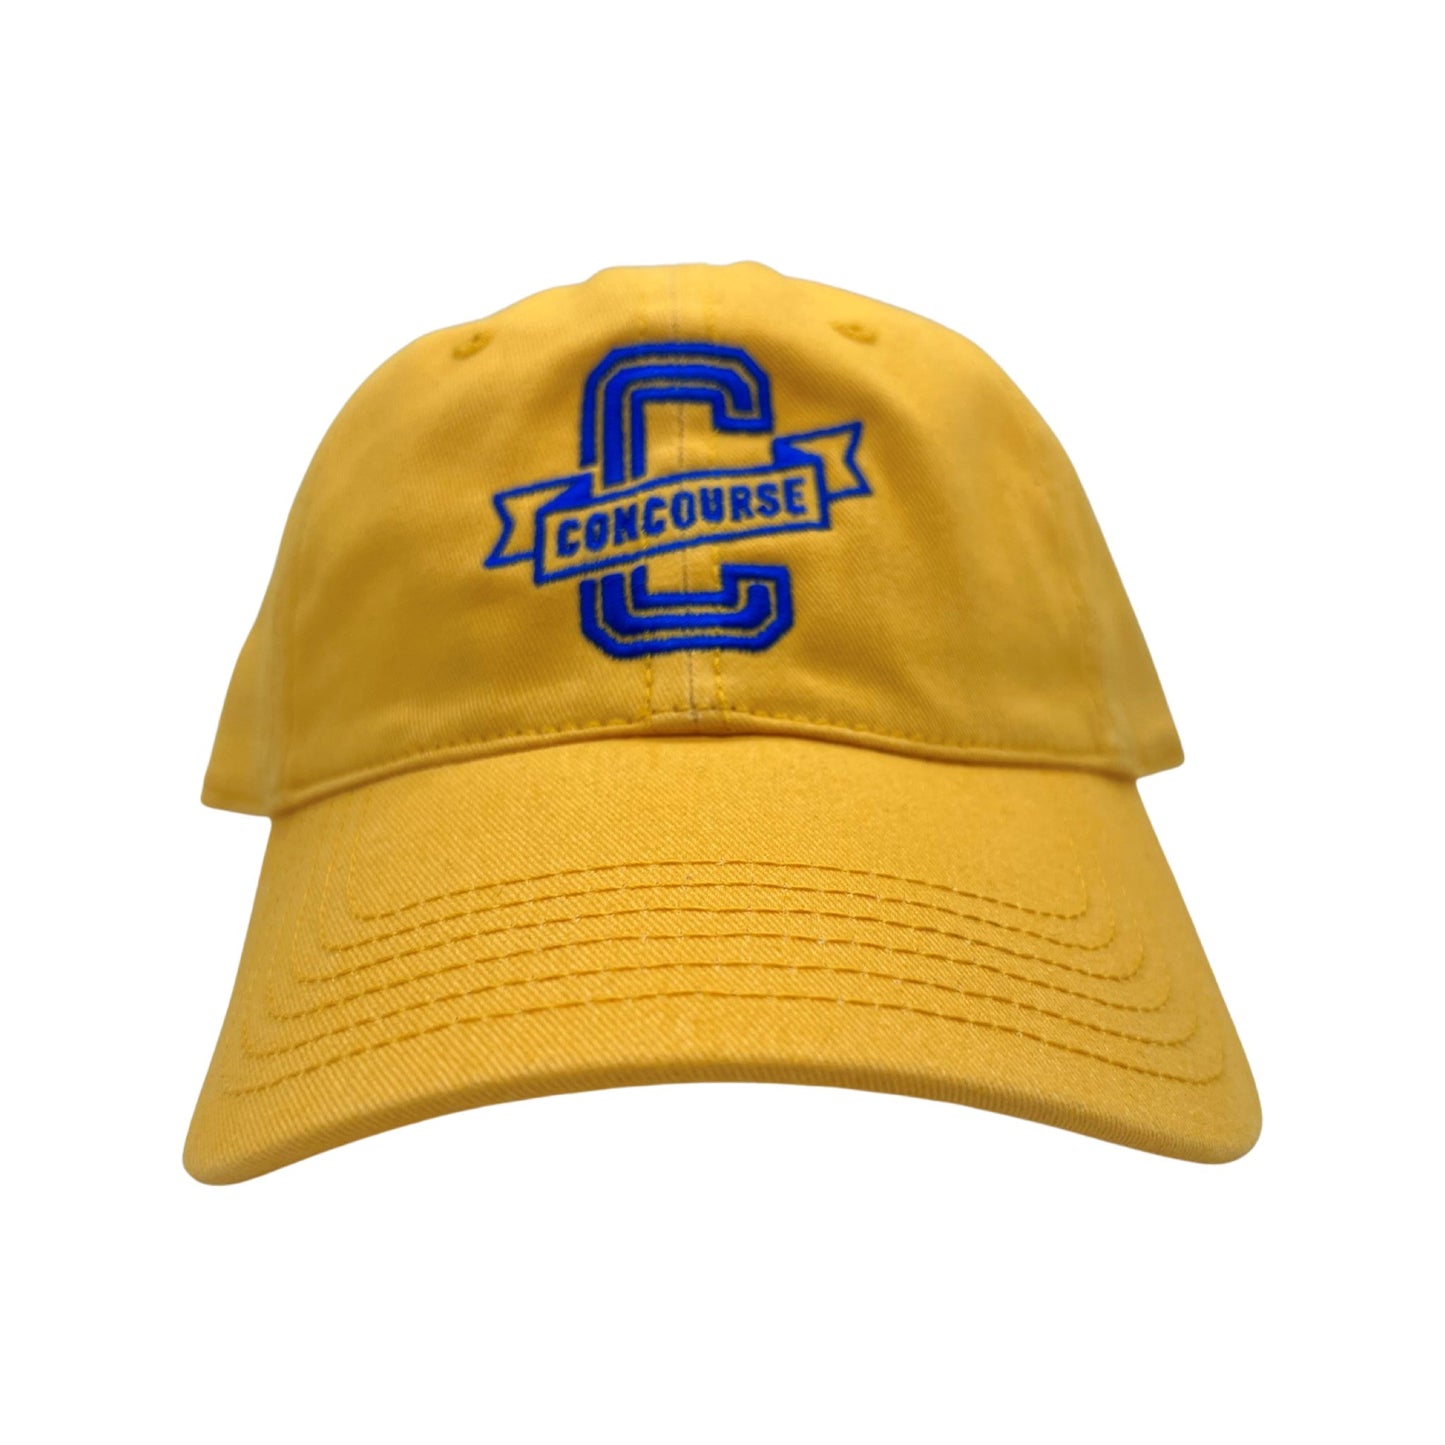 Concourse Logo Dad Hat